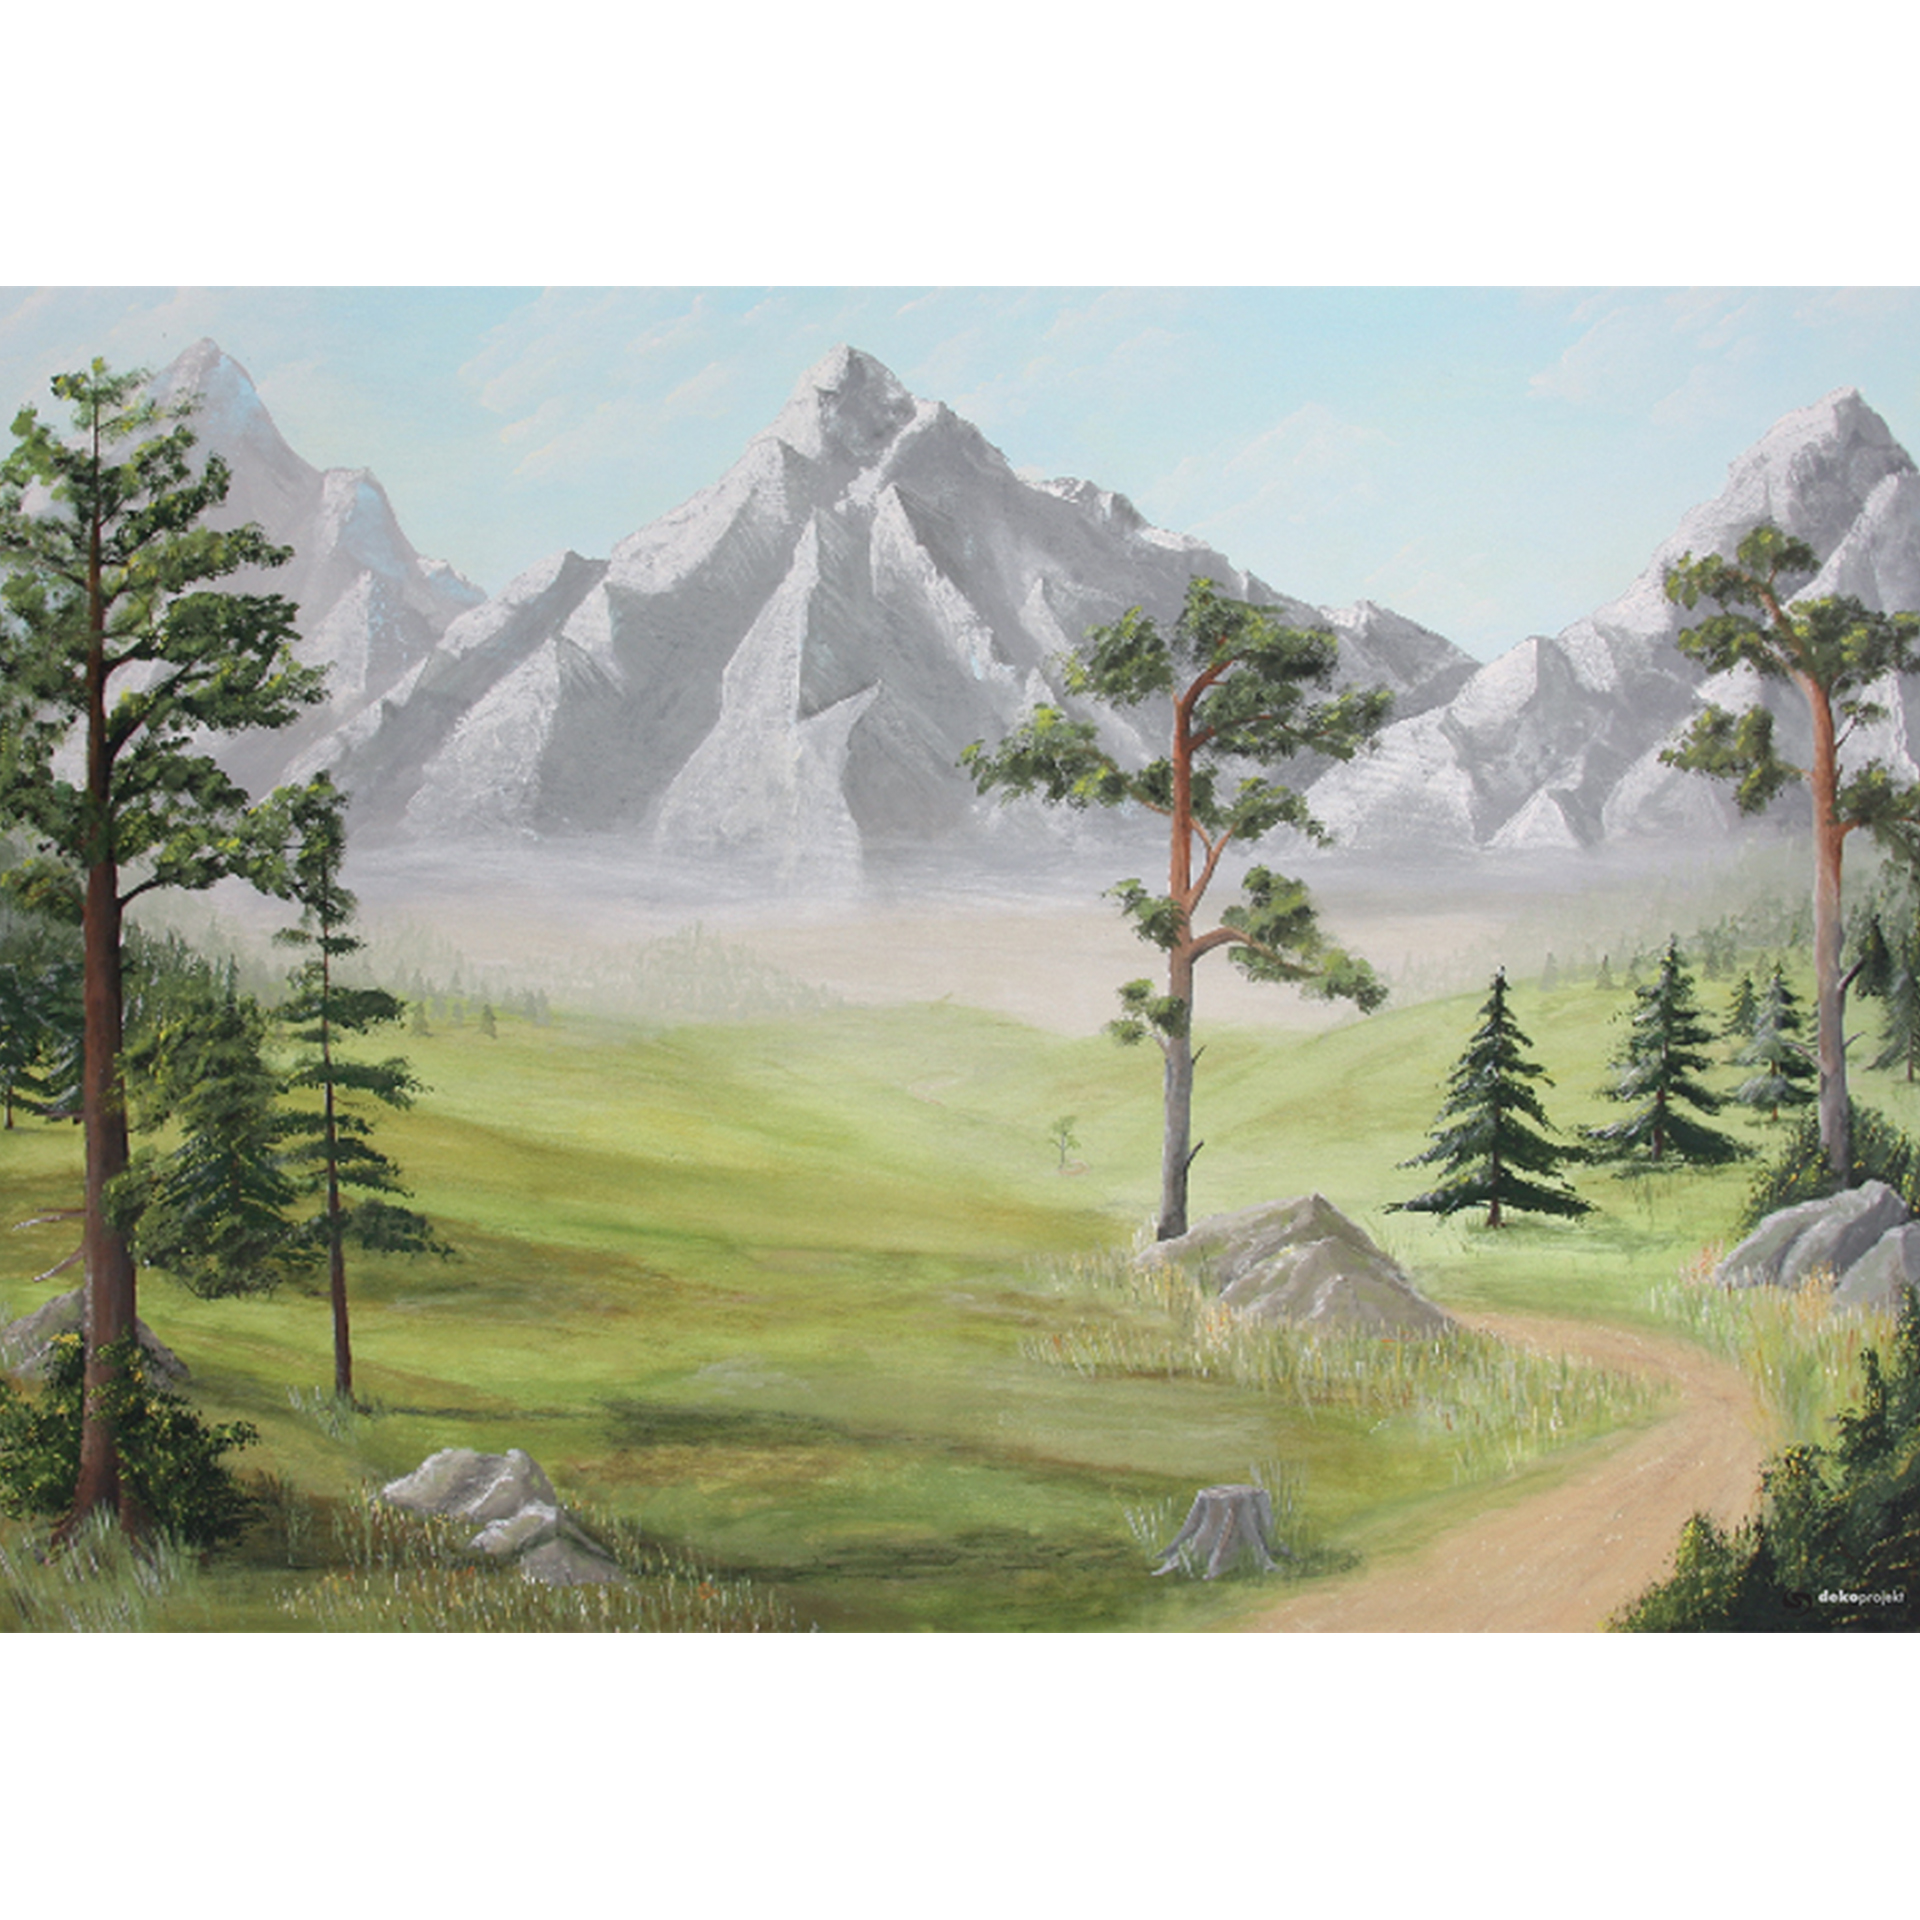 Berge im Hintergrund, im Vordergrund Wiesen, Wanderweg und Zirben